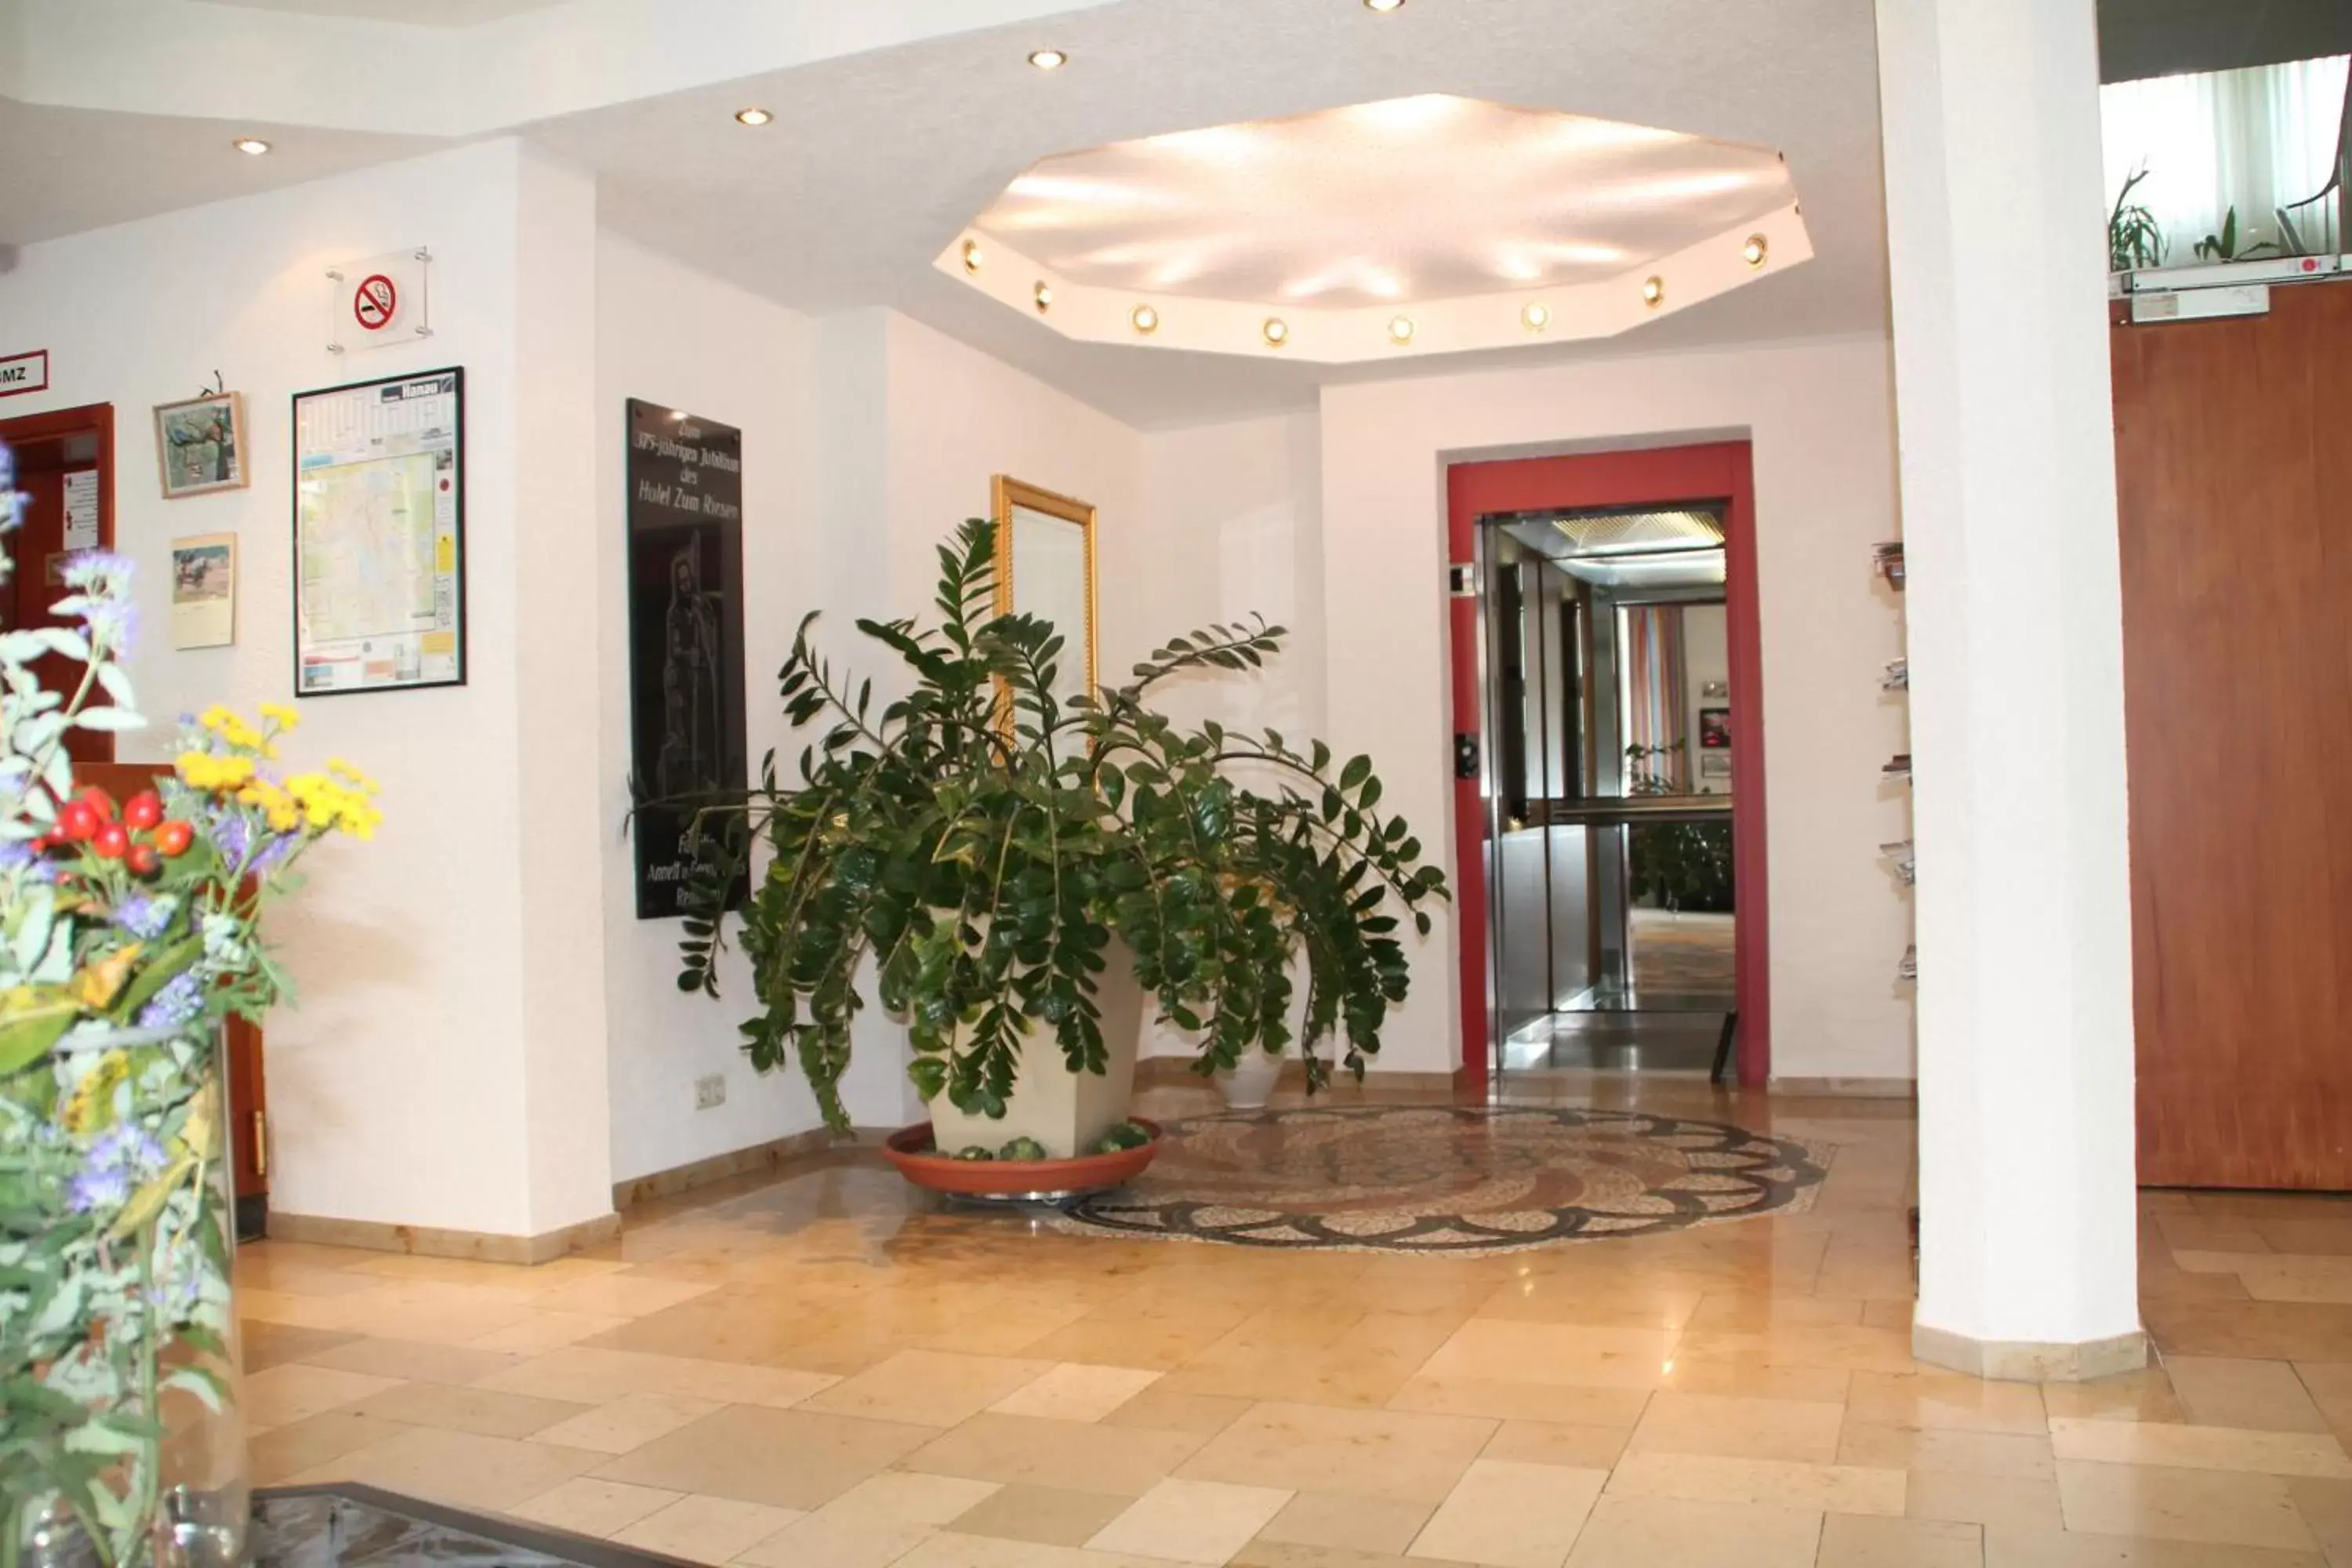 Lobby or reception, Lobby/Reception in Trip Inn Hotel Zum Riesen Hanau